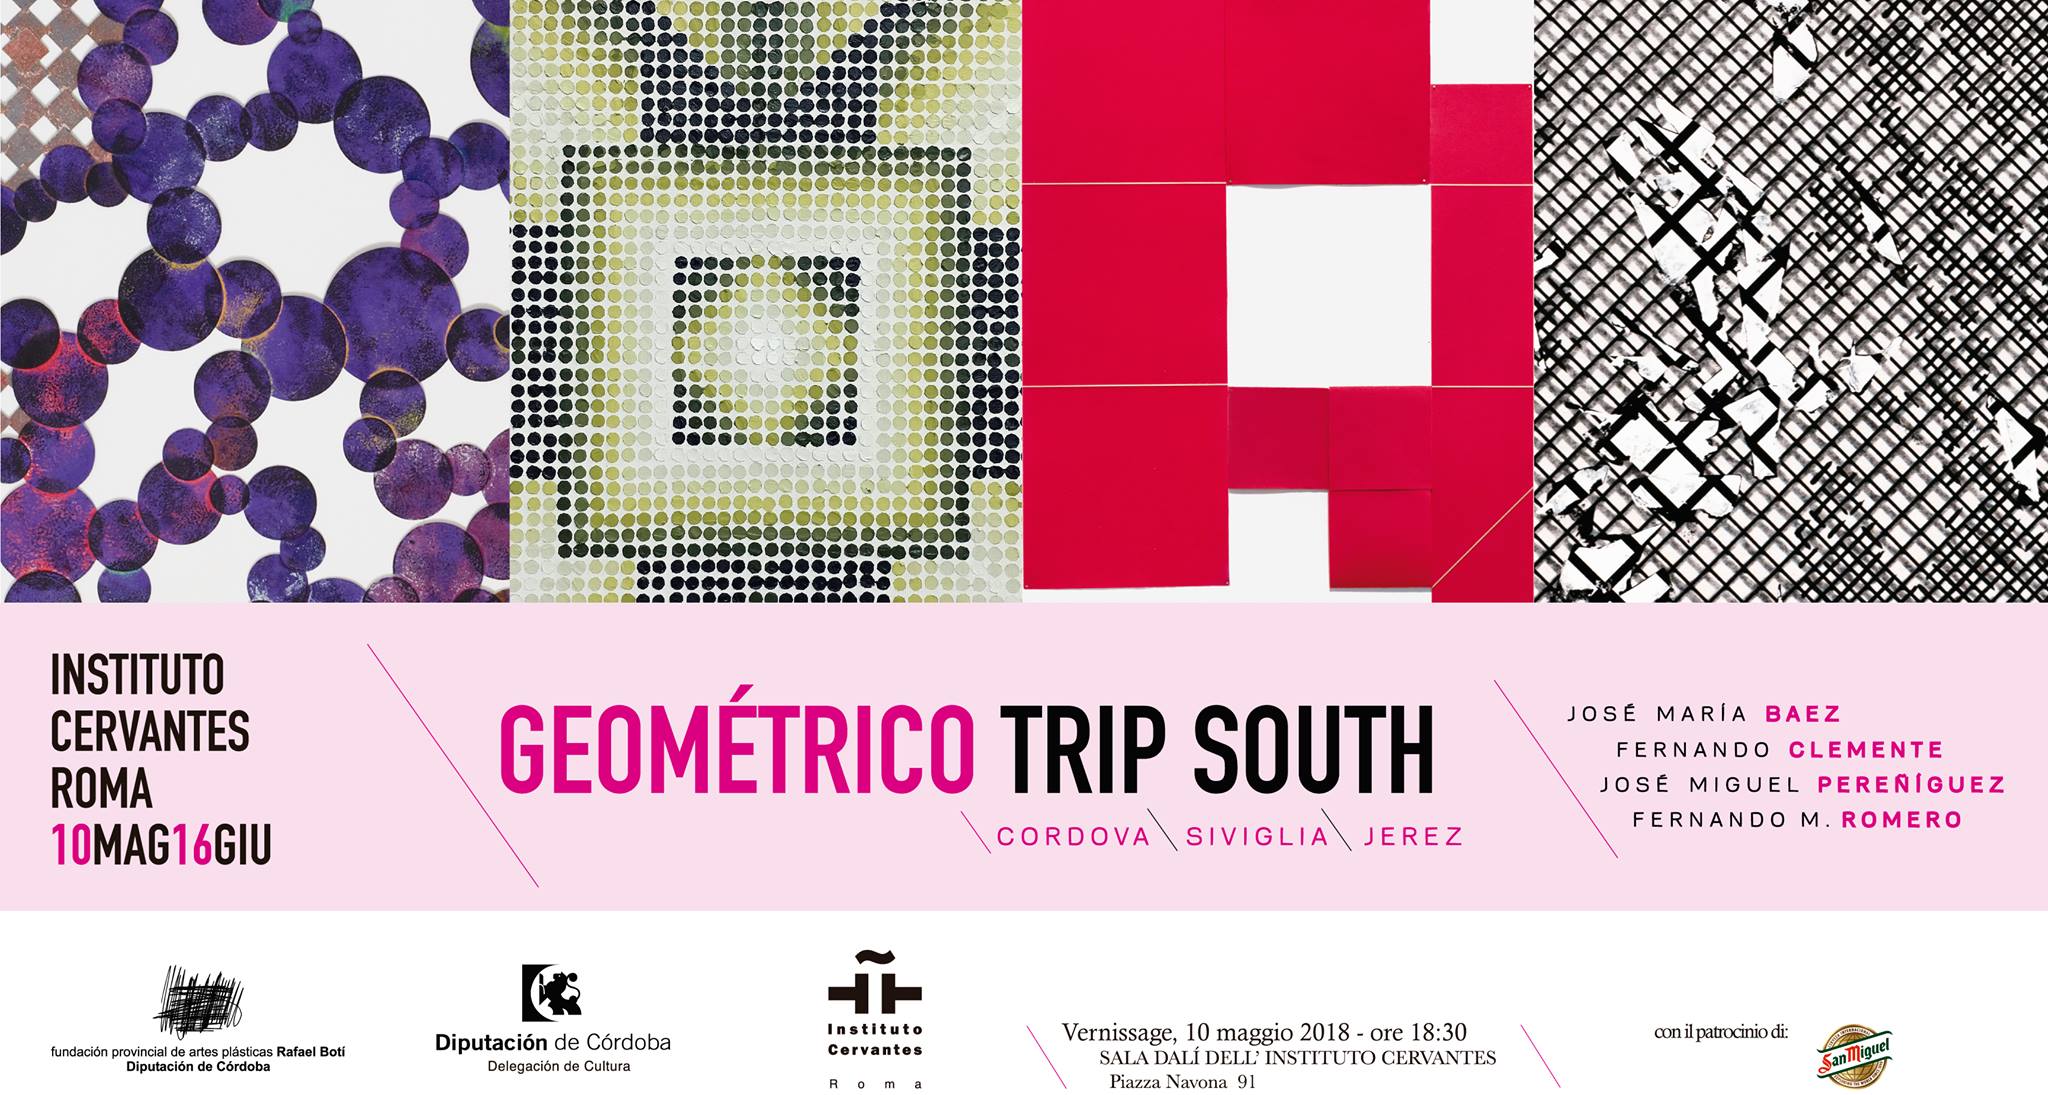  Geometrico Trip South, dal 10 maggio al 16 giugno per la prima volta in Italia all’Instituto Cervantes di Roma